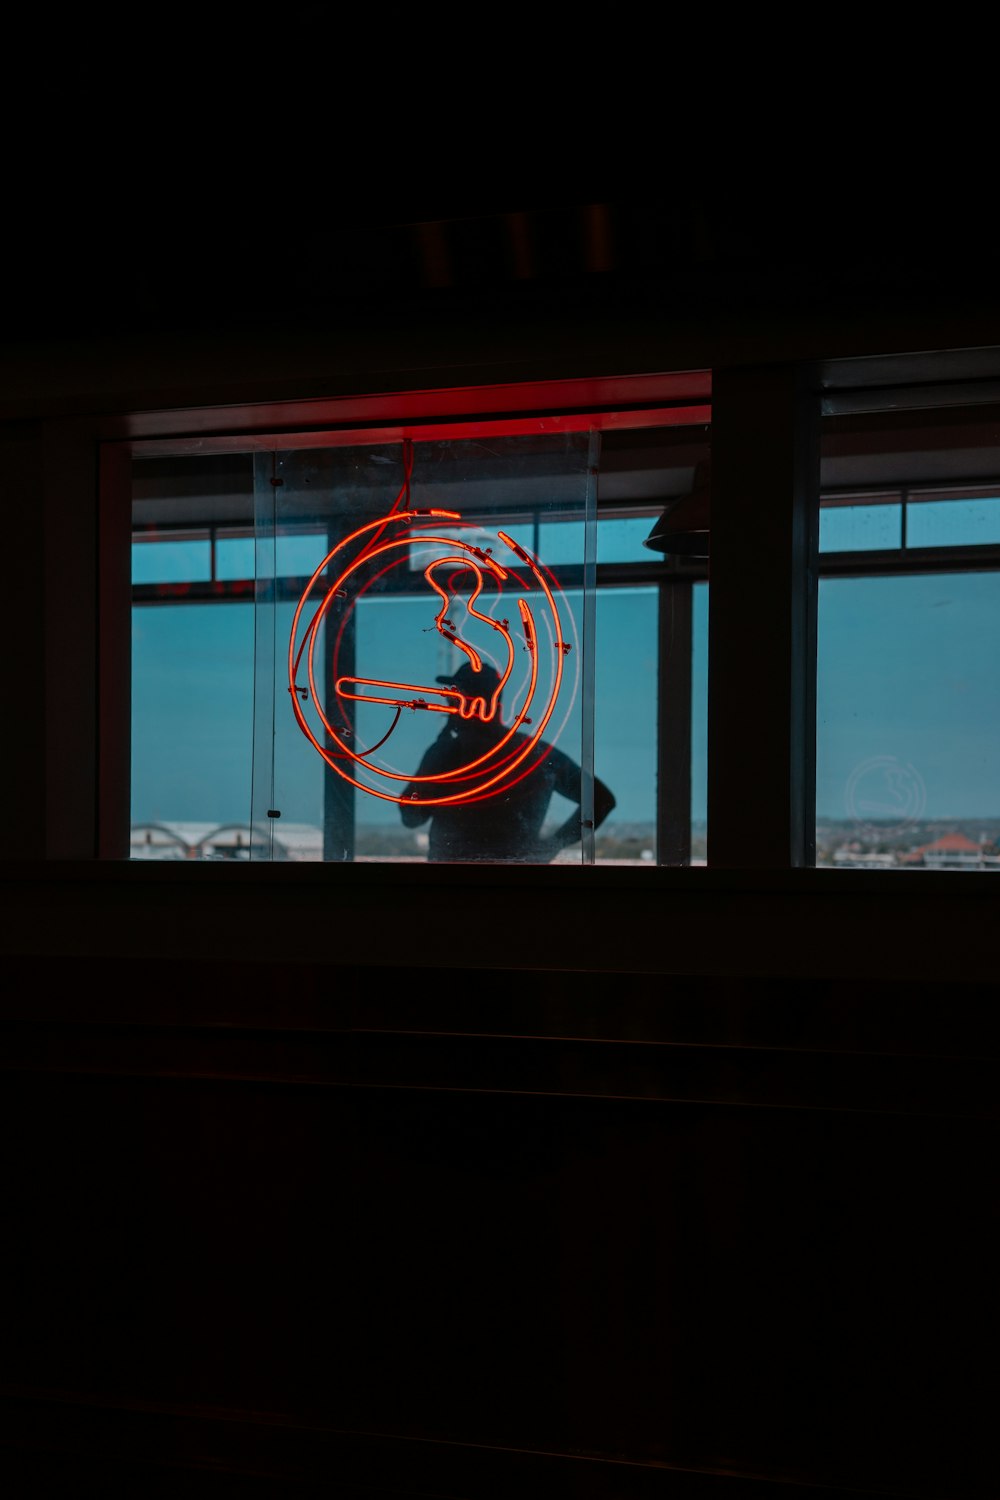 Un letrero de neón frente a una ventana en una habitación oscura